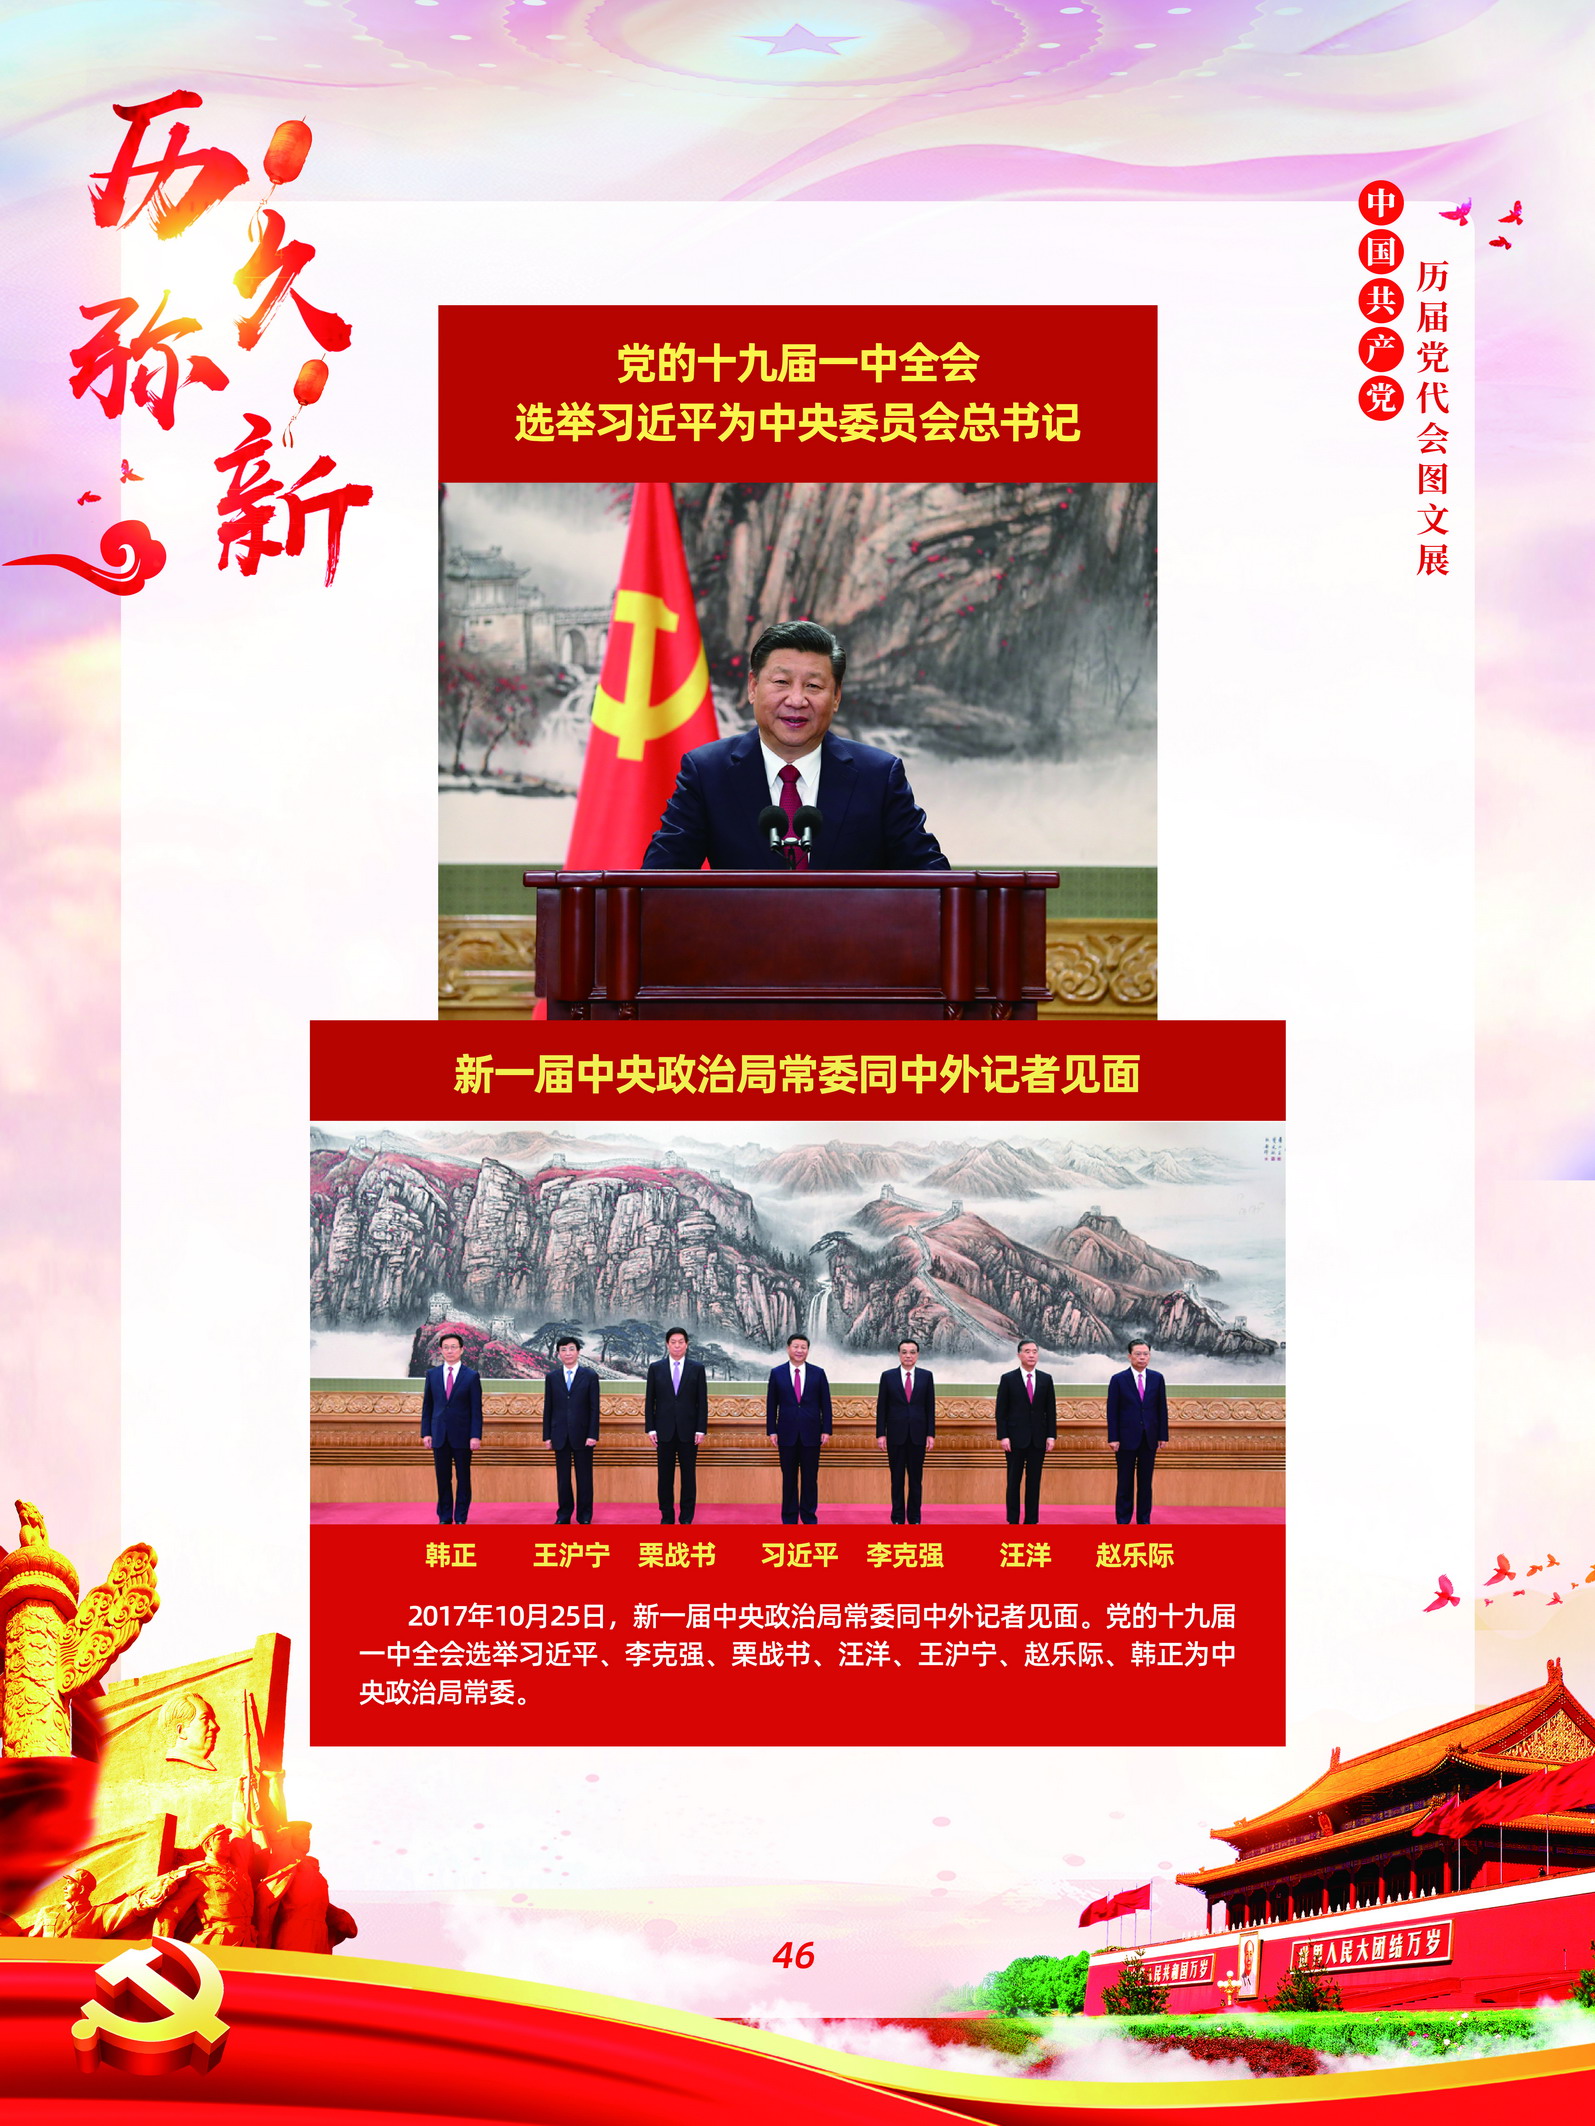 中国共产党历届党代会图文展_图45